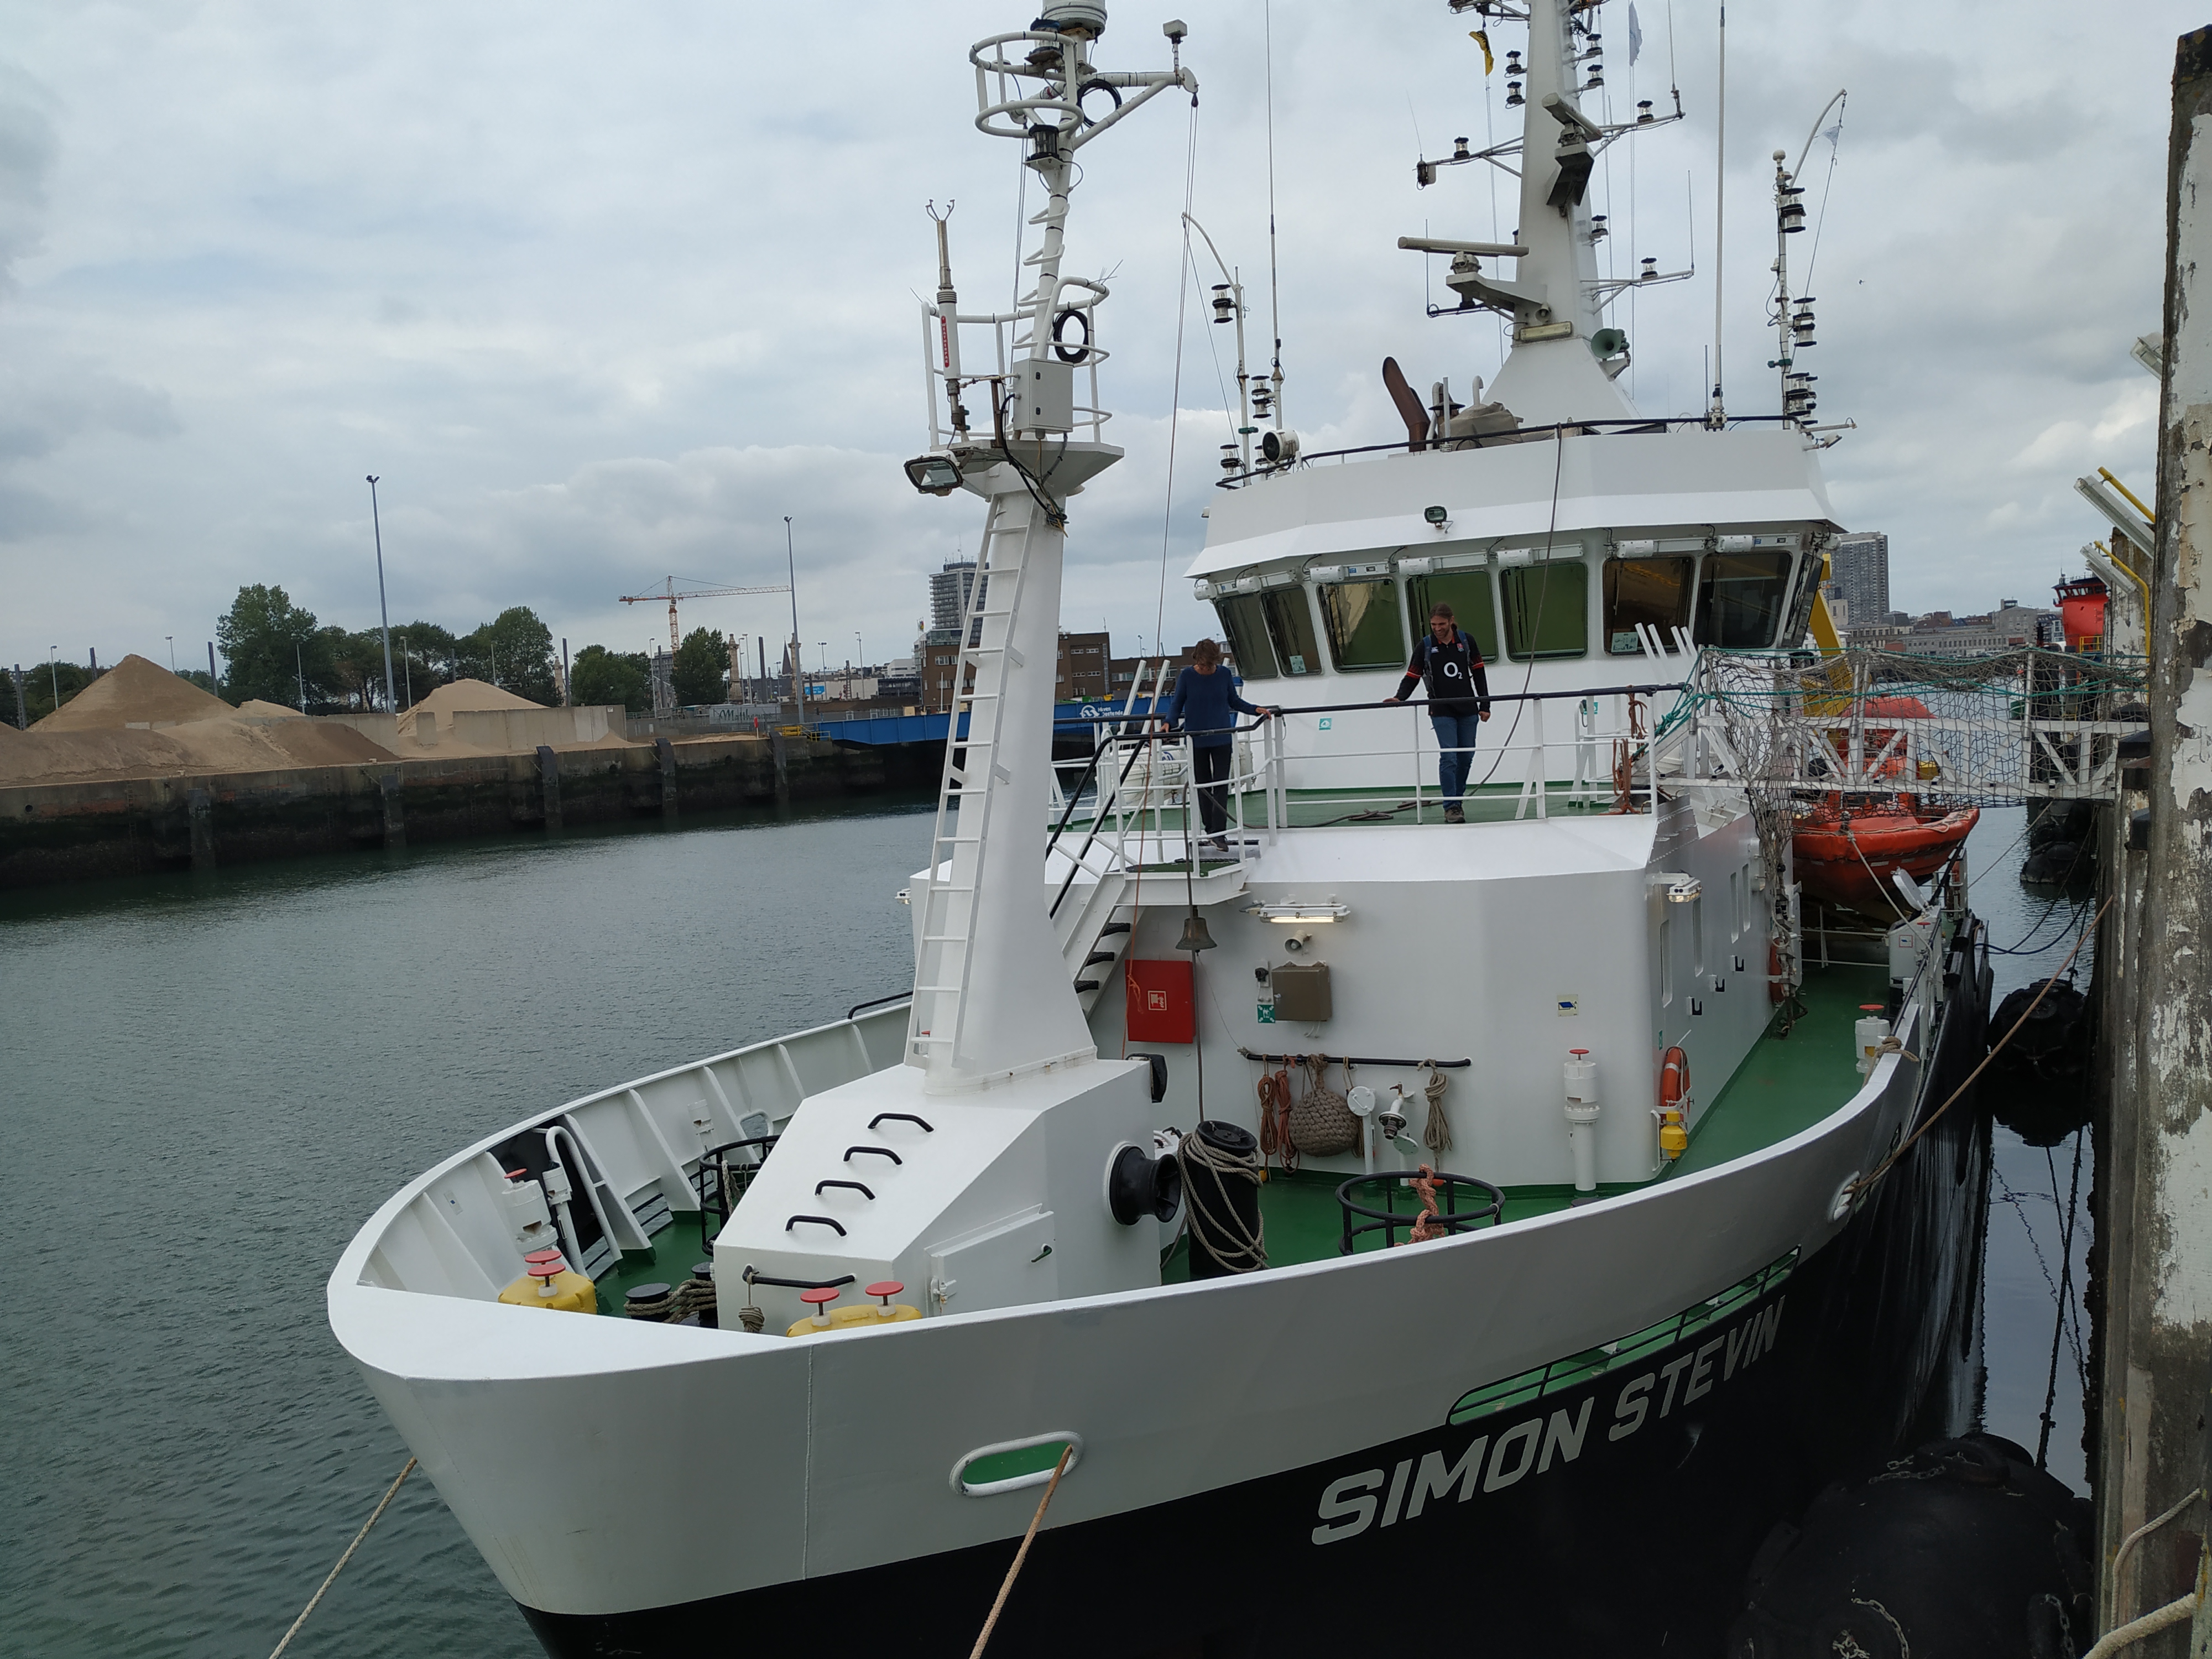 RISeR onboard the Simon Stevin